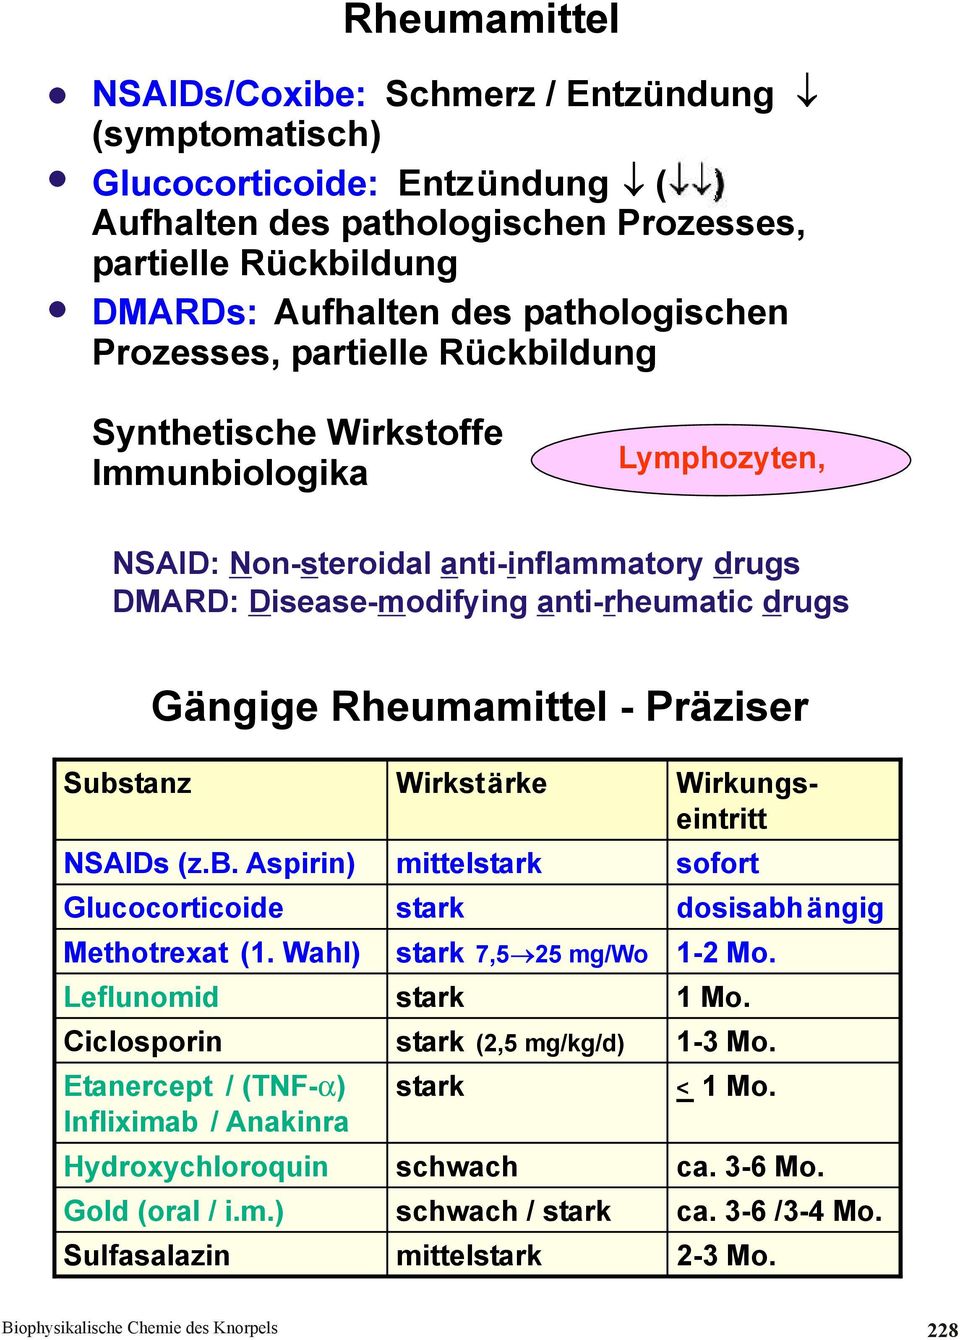 Gängige Rheumamittel - Präziser NSAIDs (z.b. Aspirin) Glucocorticoide Methotrexat (1. Wahl) Leflunomid Ciclosporin Etanercept / (TNF-α) Infliximab / Anakinra Hydroxychloroquin Gold (oral / i.m.) Wirkstärke mittelstark stark stark 7,5 stark stark (2,5 mg/kg/d) stark schwach 25 mg/wo schwach / stark Wirkungseintritt sofort dosisabh ängig 1-2 Mo.